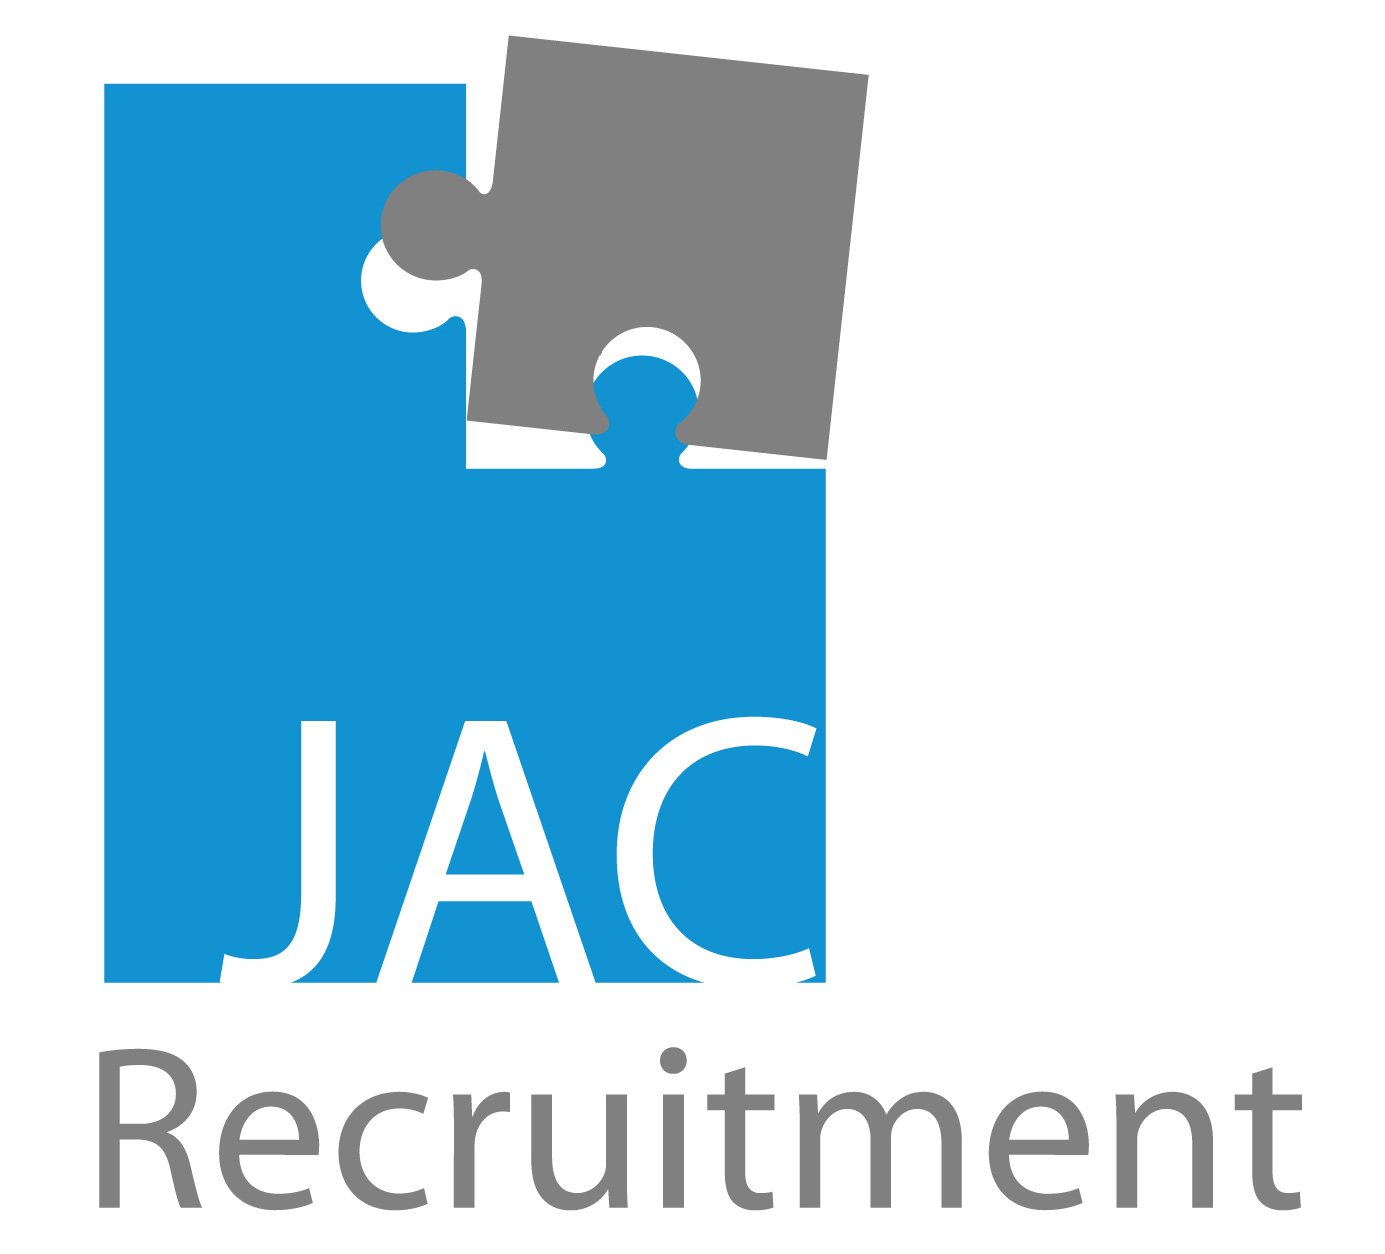 転職エージェントは どこも評判は同じと思っていた私が JAC Recruitment (ジェイエイシー・リクルートメント)を一社だけを選んで転職した 4つの理由